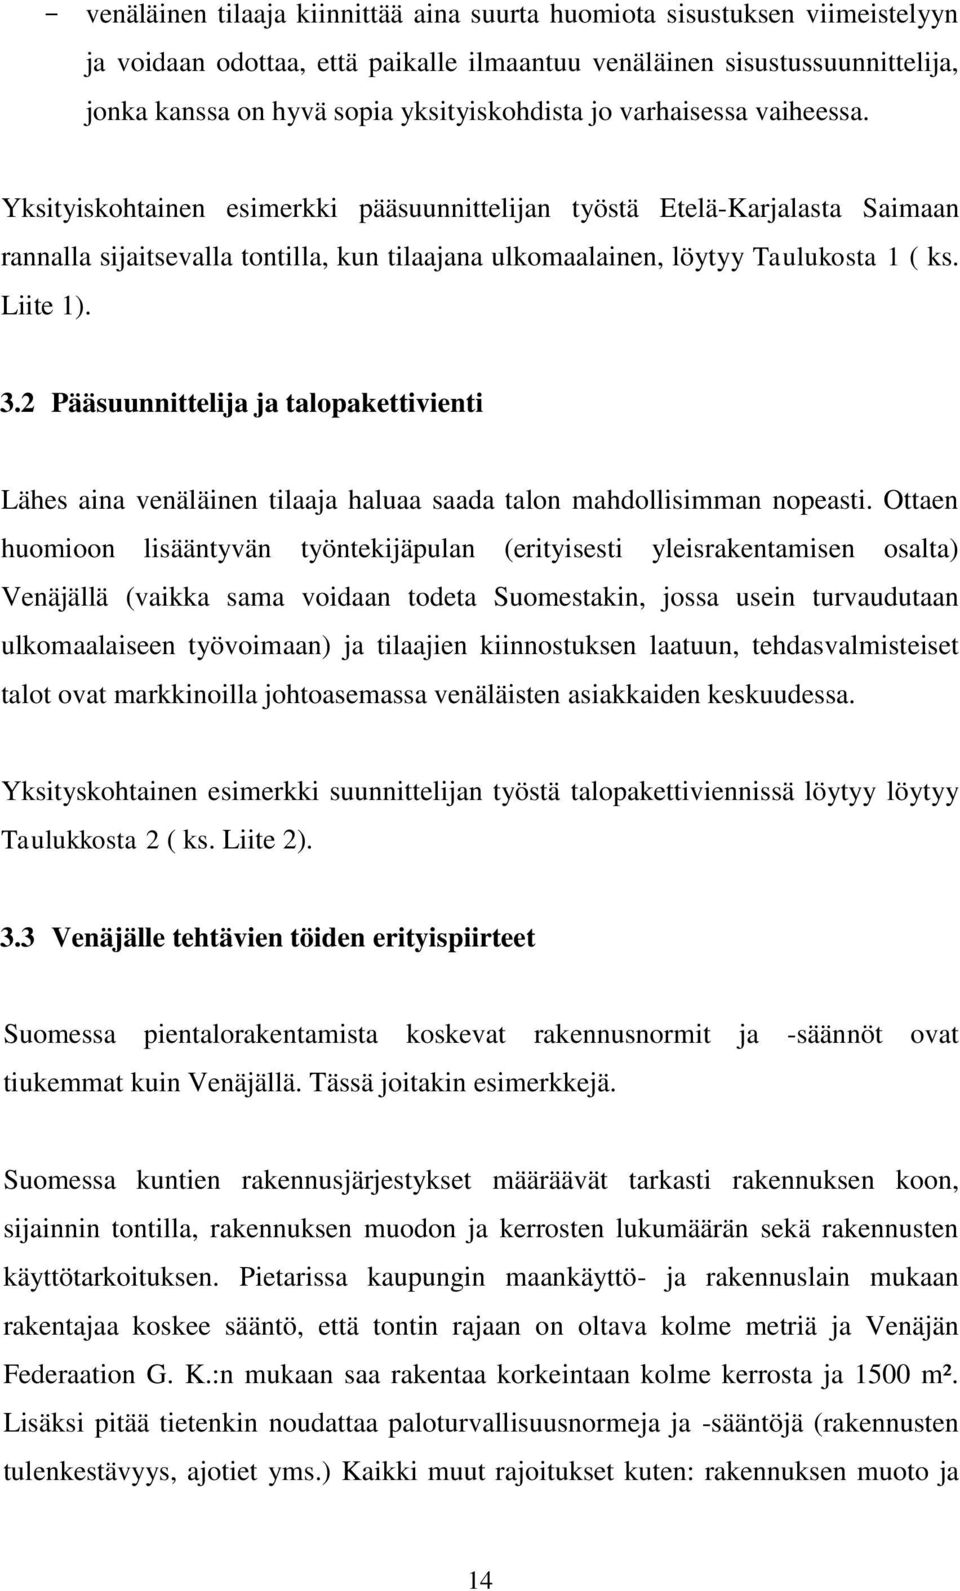 Yksityiskohtainen esimerkki pääsuunnittelijan työstä Etelä-Karjalasta Saimaan rannalla sijaitsevalla tontilla, kun tilaajana ulkomaalainen, löytyy Taulukosta 1 ( ks. Liite 1). 3.